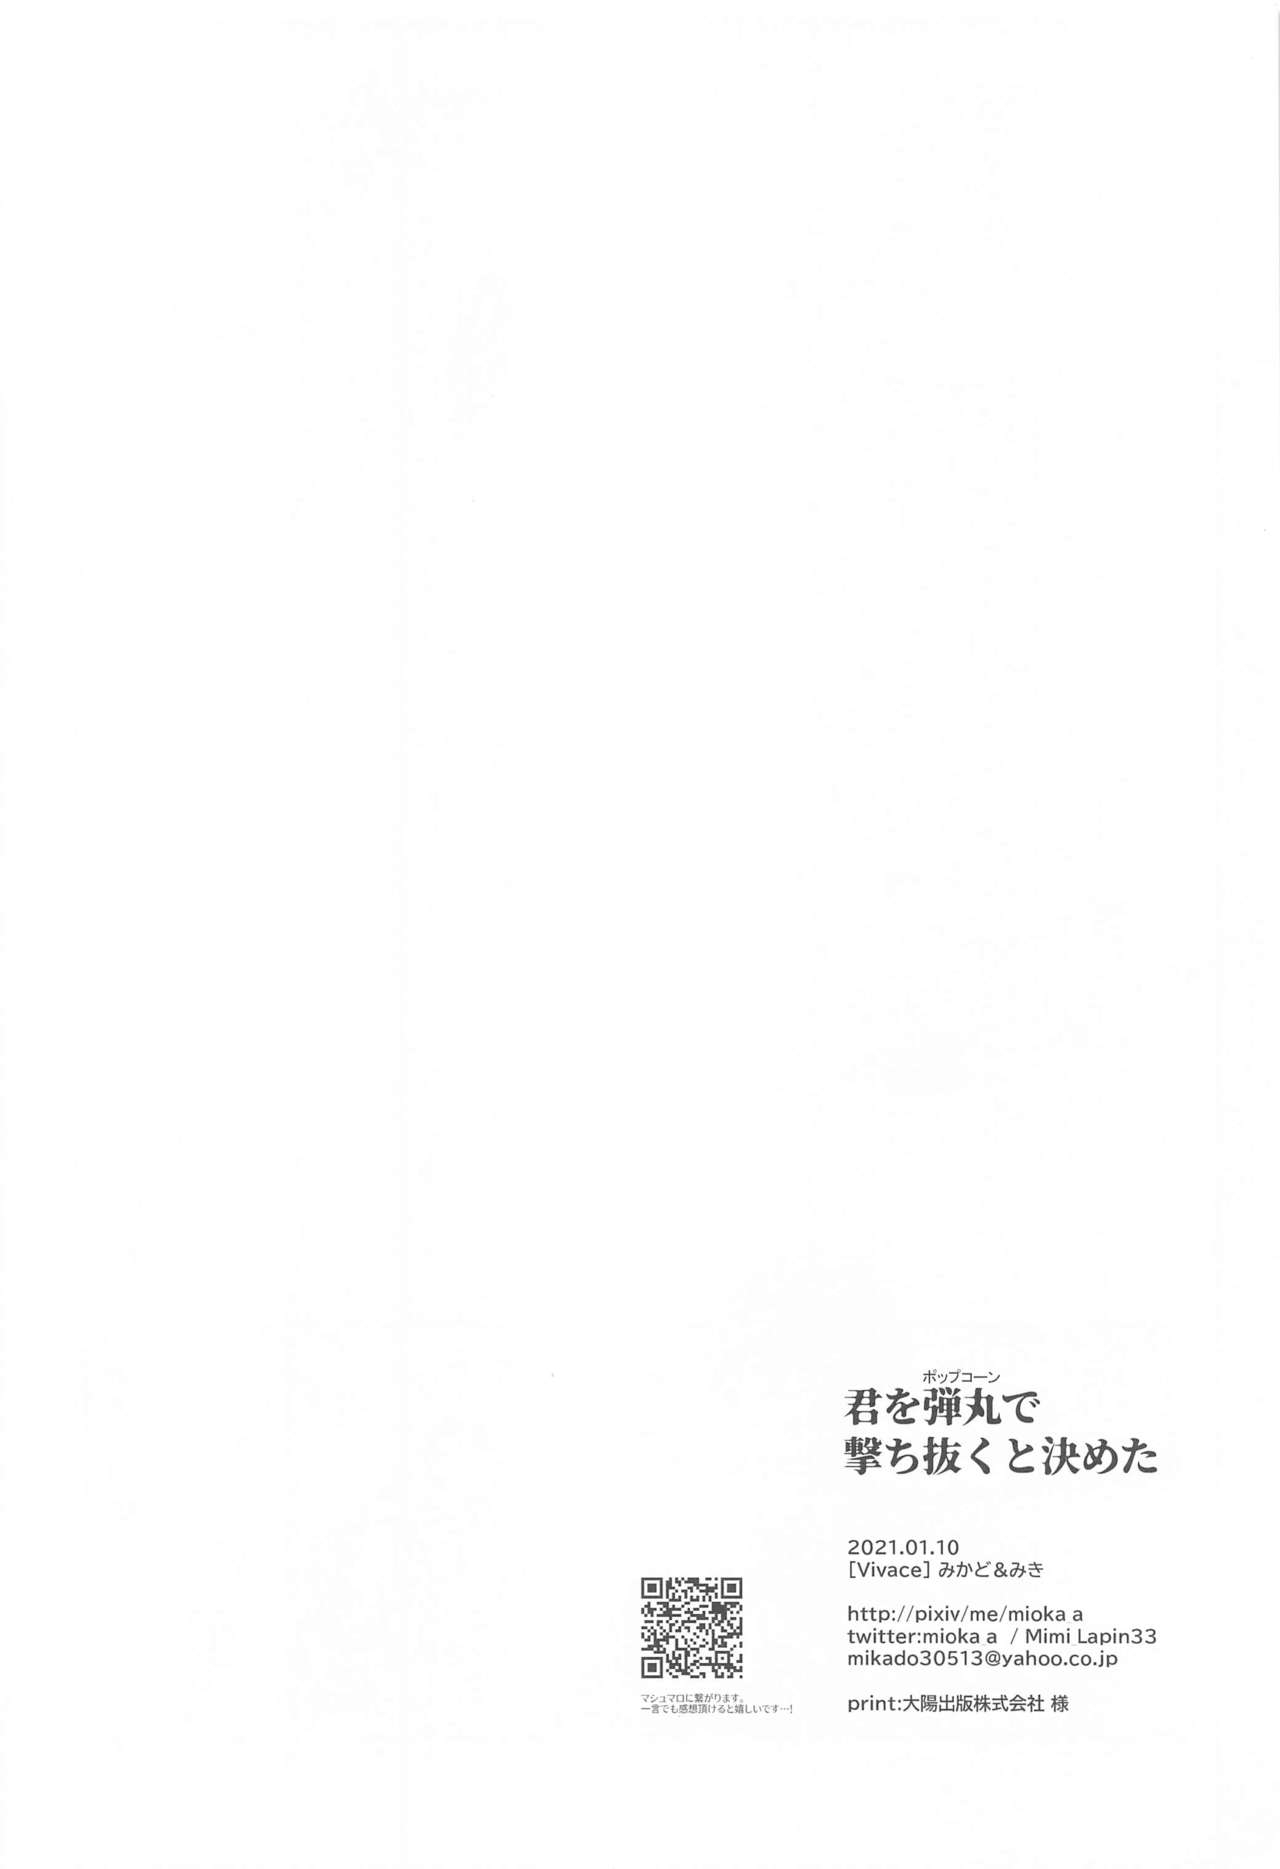 (Himitsu no Ura Kagyou 22) [Vivace (Mikado)] Kimiwo Popcorn de Uchinukuto Kimeta (Detective Conan) 24